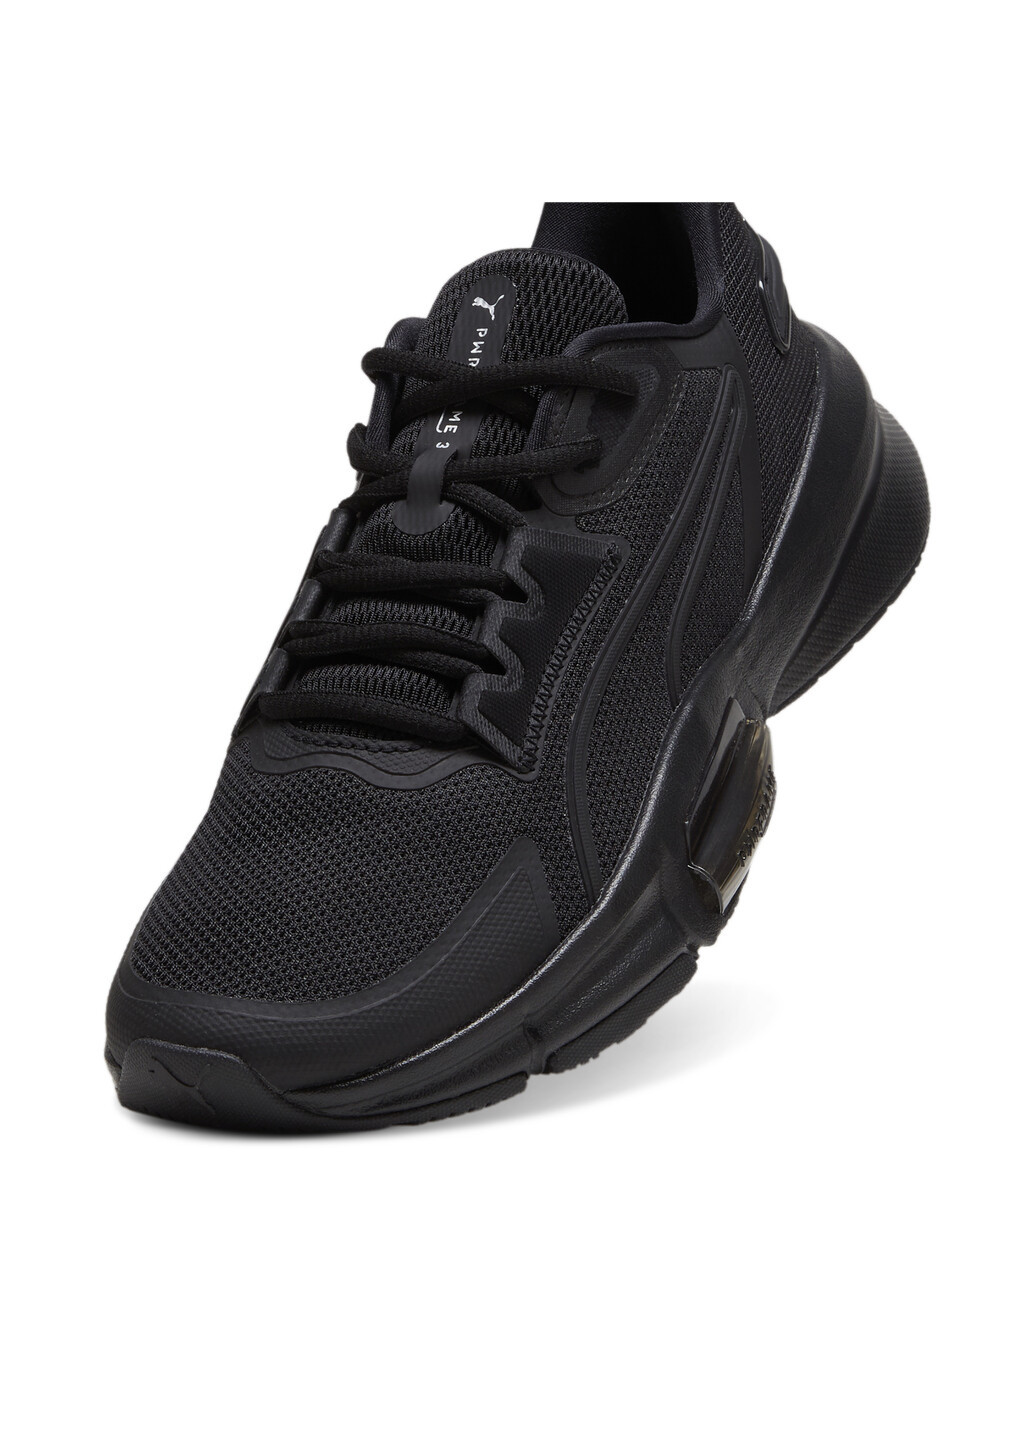 Черные всесезонные кроссовки pwrframe tr 3 men's training shoes Puma